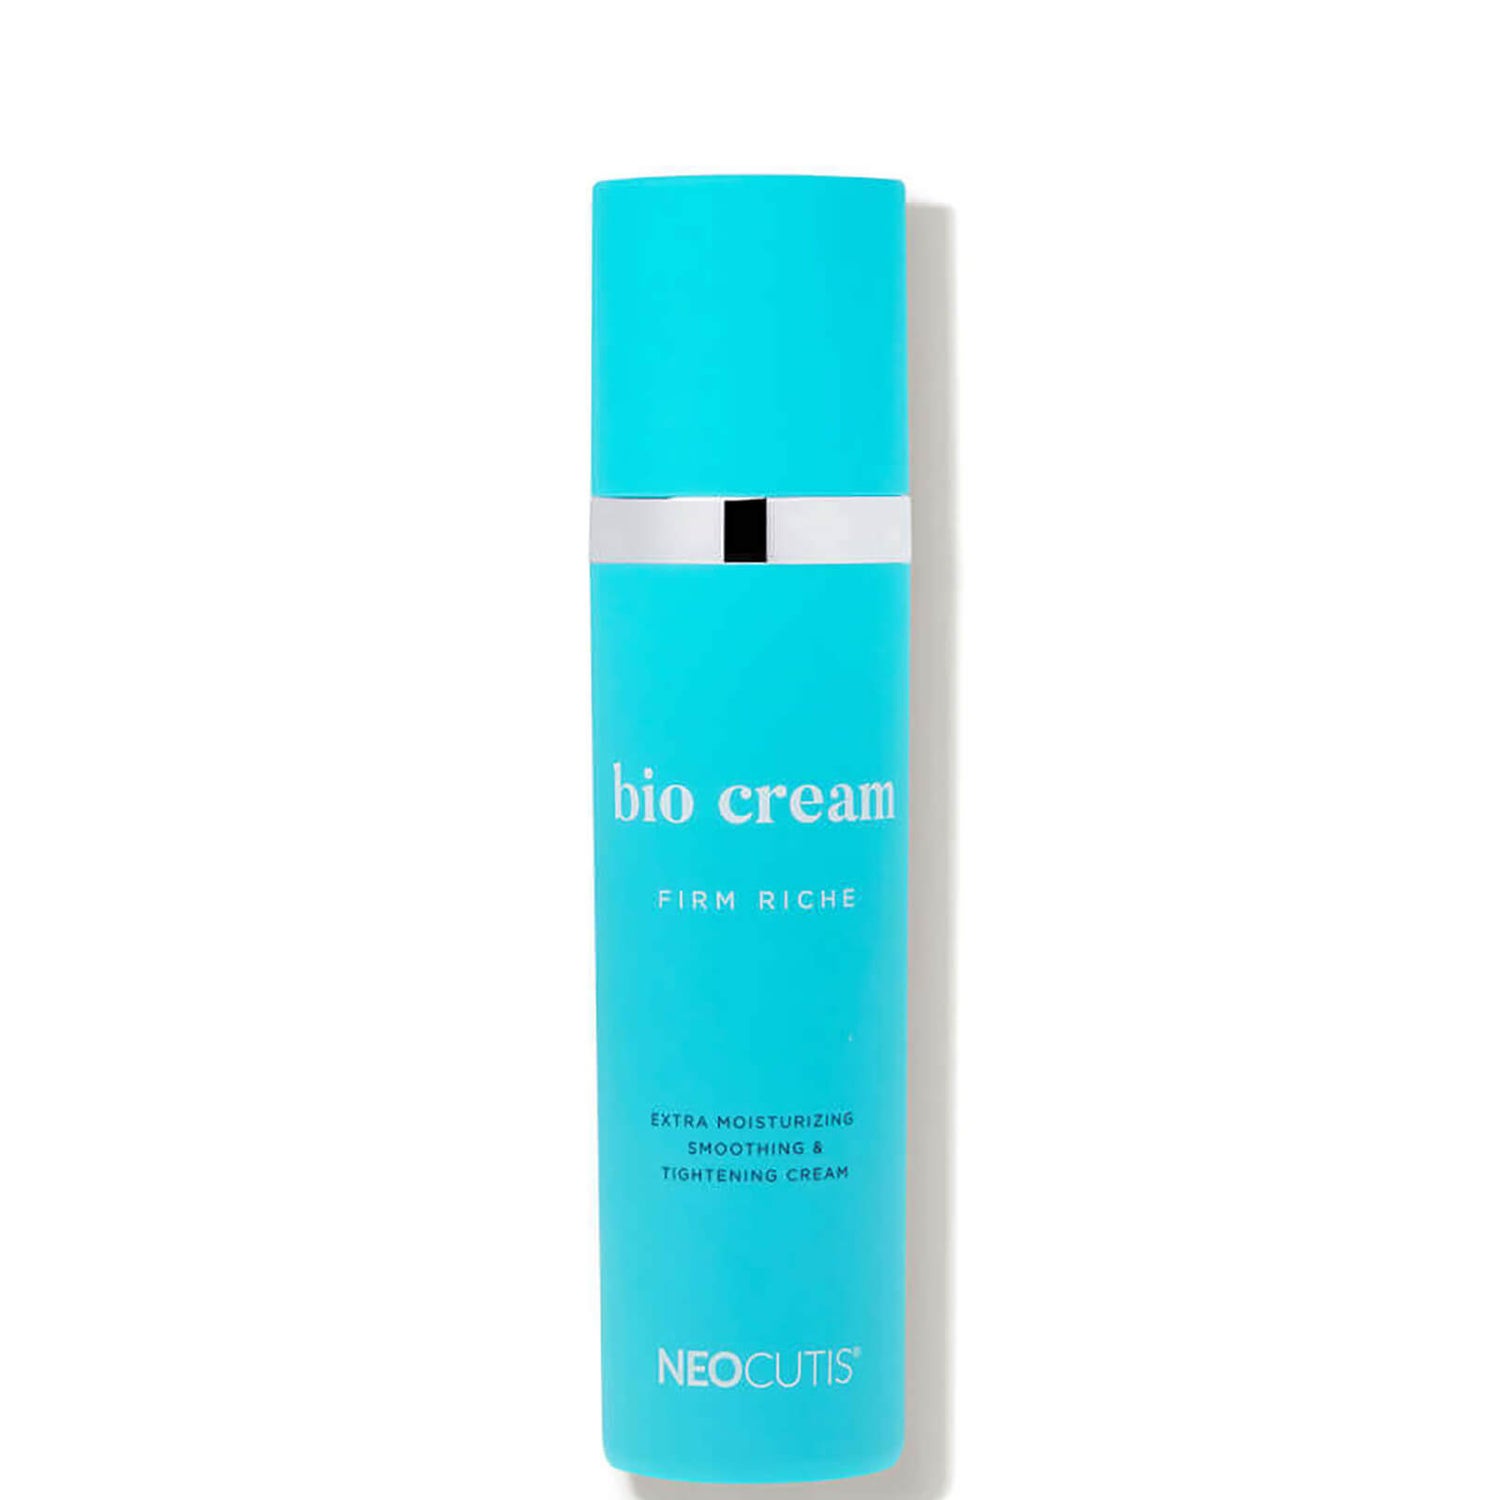 Neocutis Bio Cream Firm Riche 1.69 fl. oz.